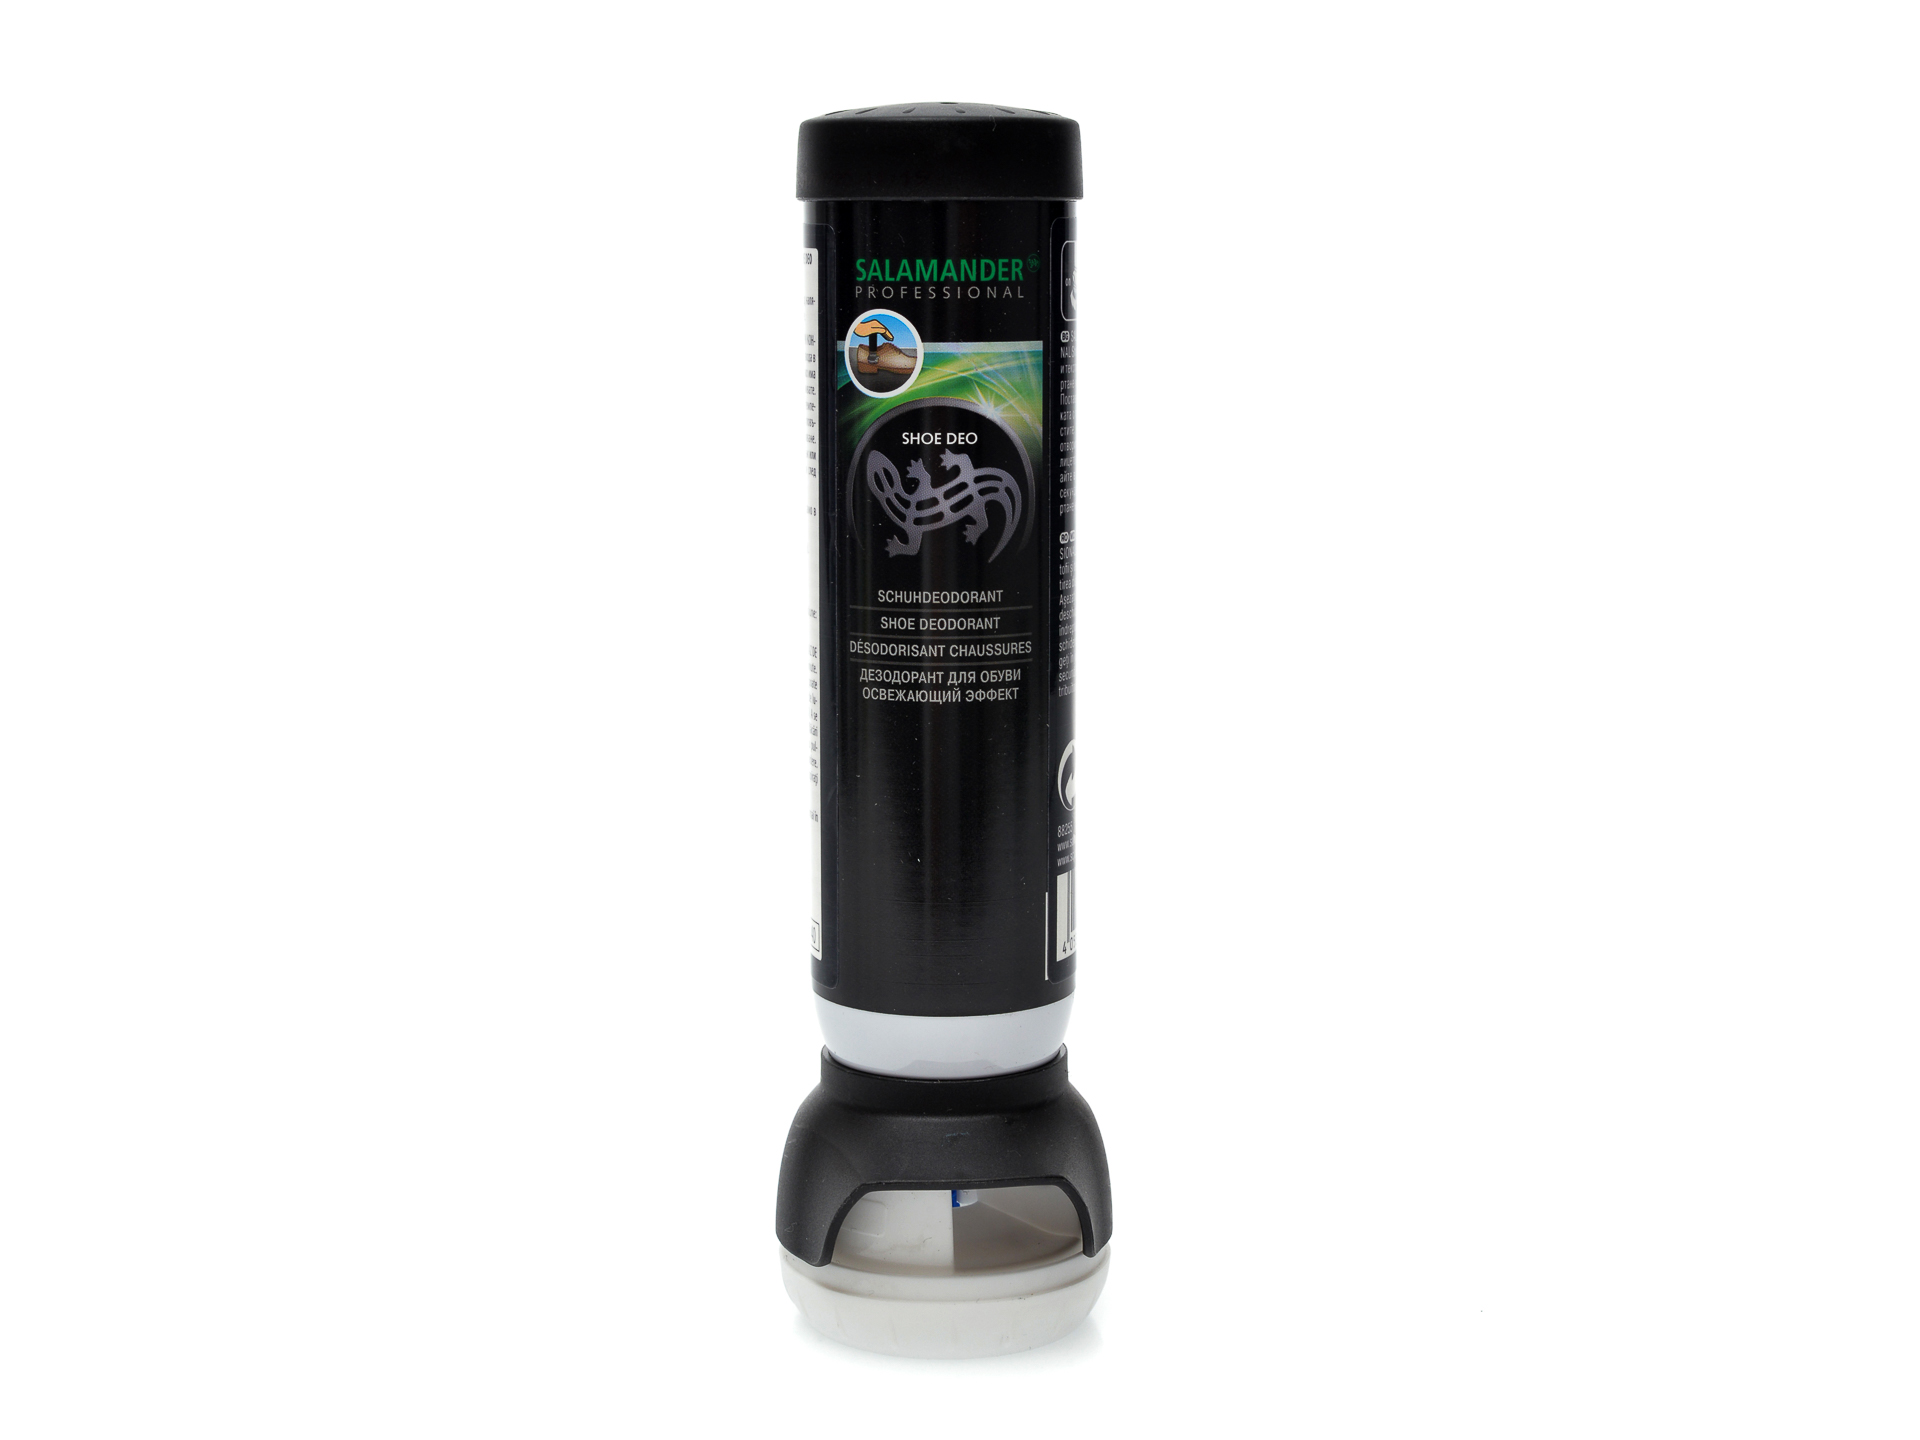 Deodorant pentru mentinerea prospetimii in incaltaminte, Salamander imagine otter.ro 2021